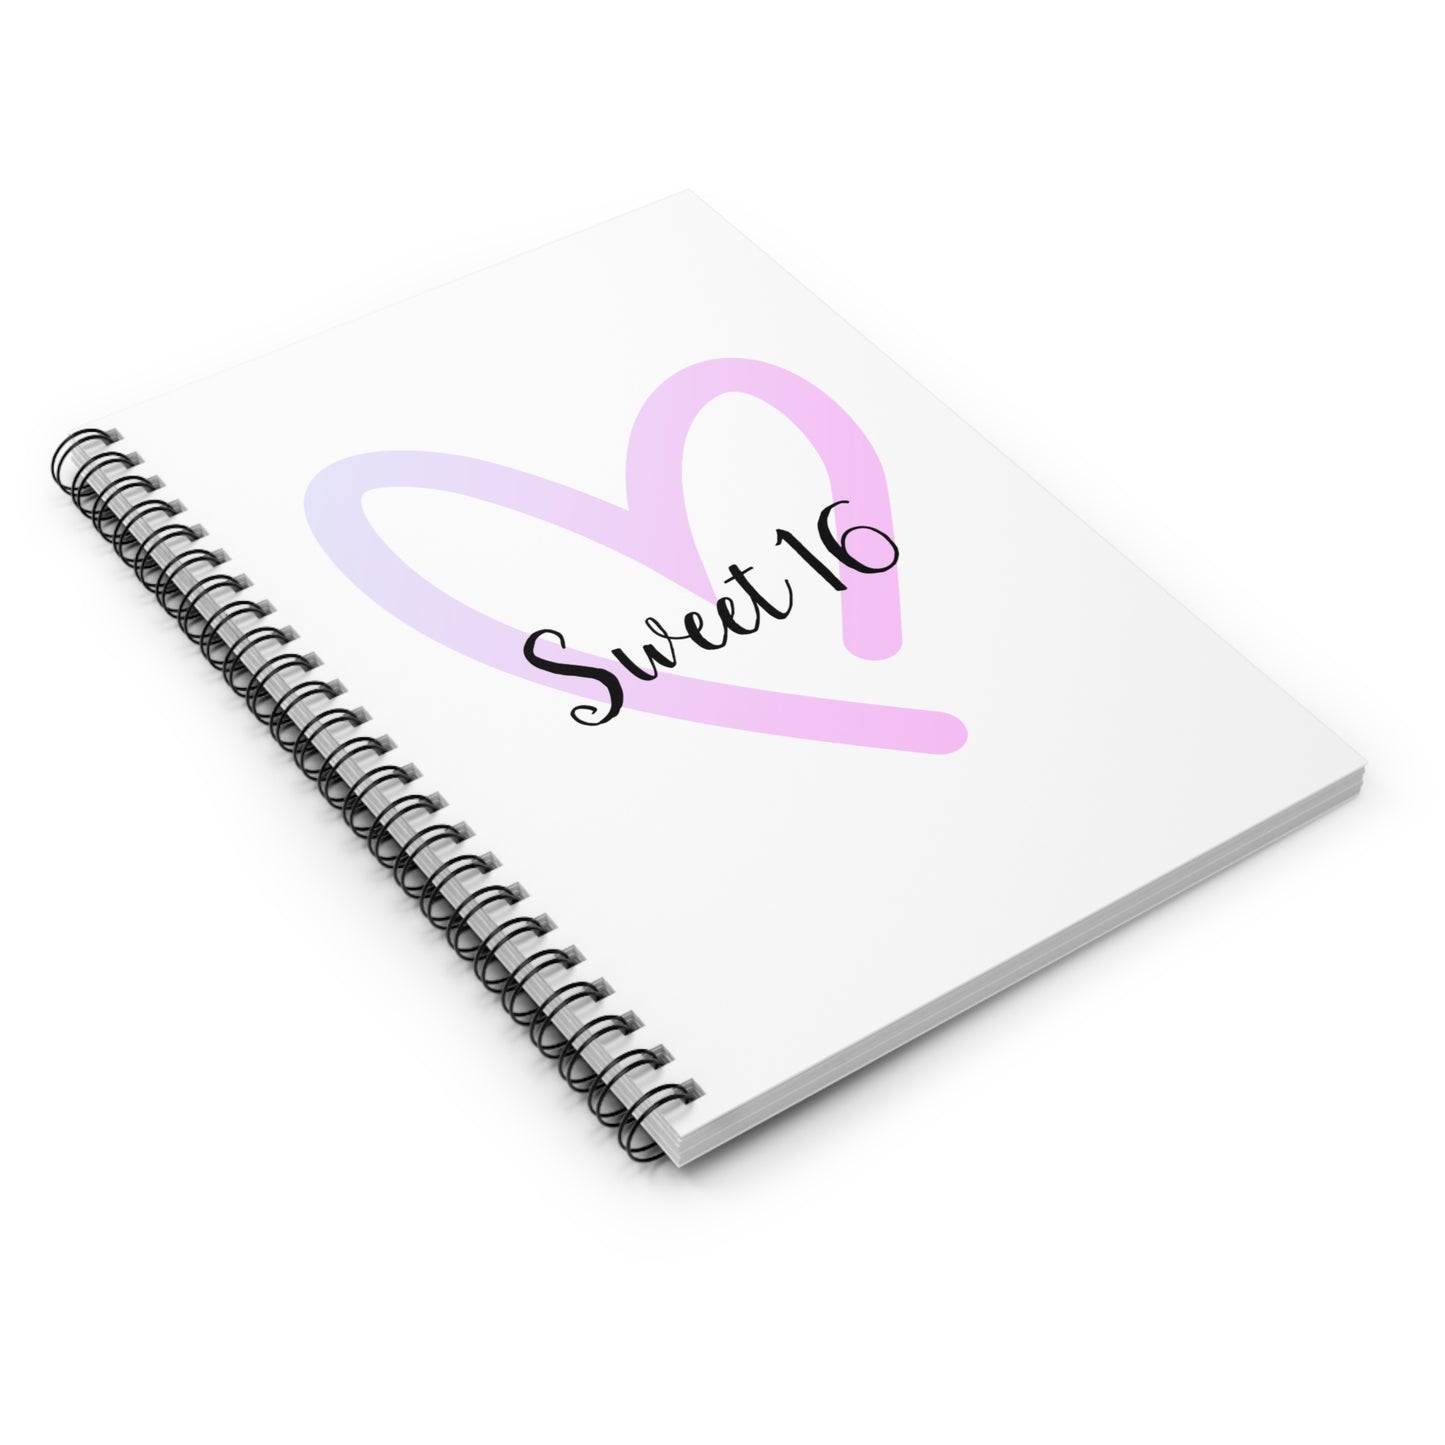 Sweet 16 Spiral Notebook -